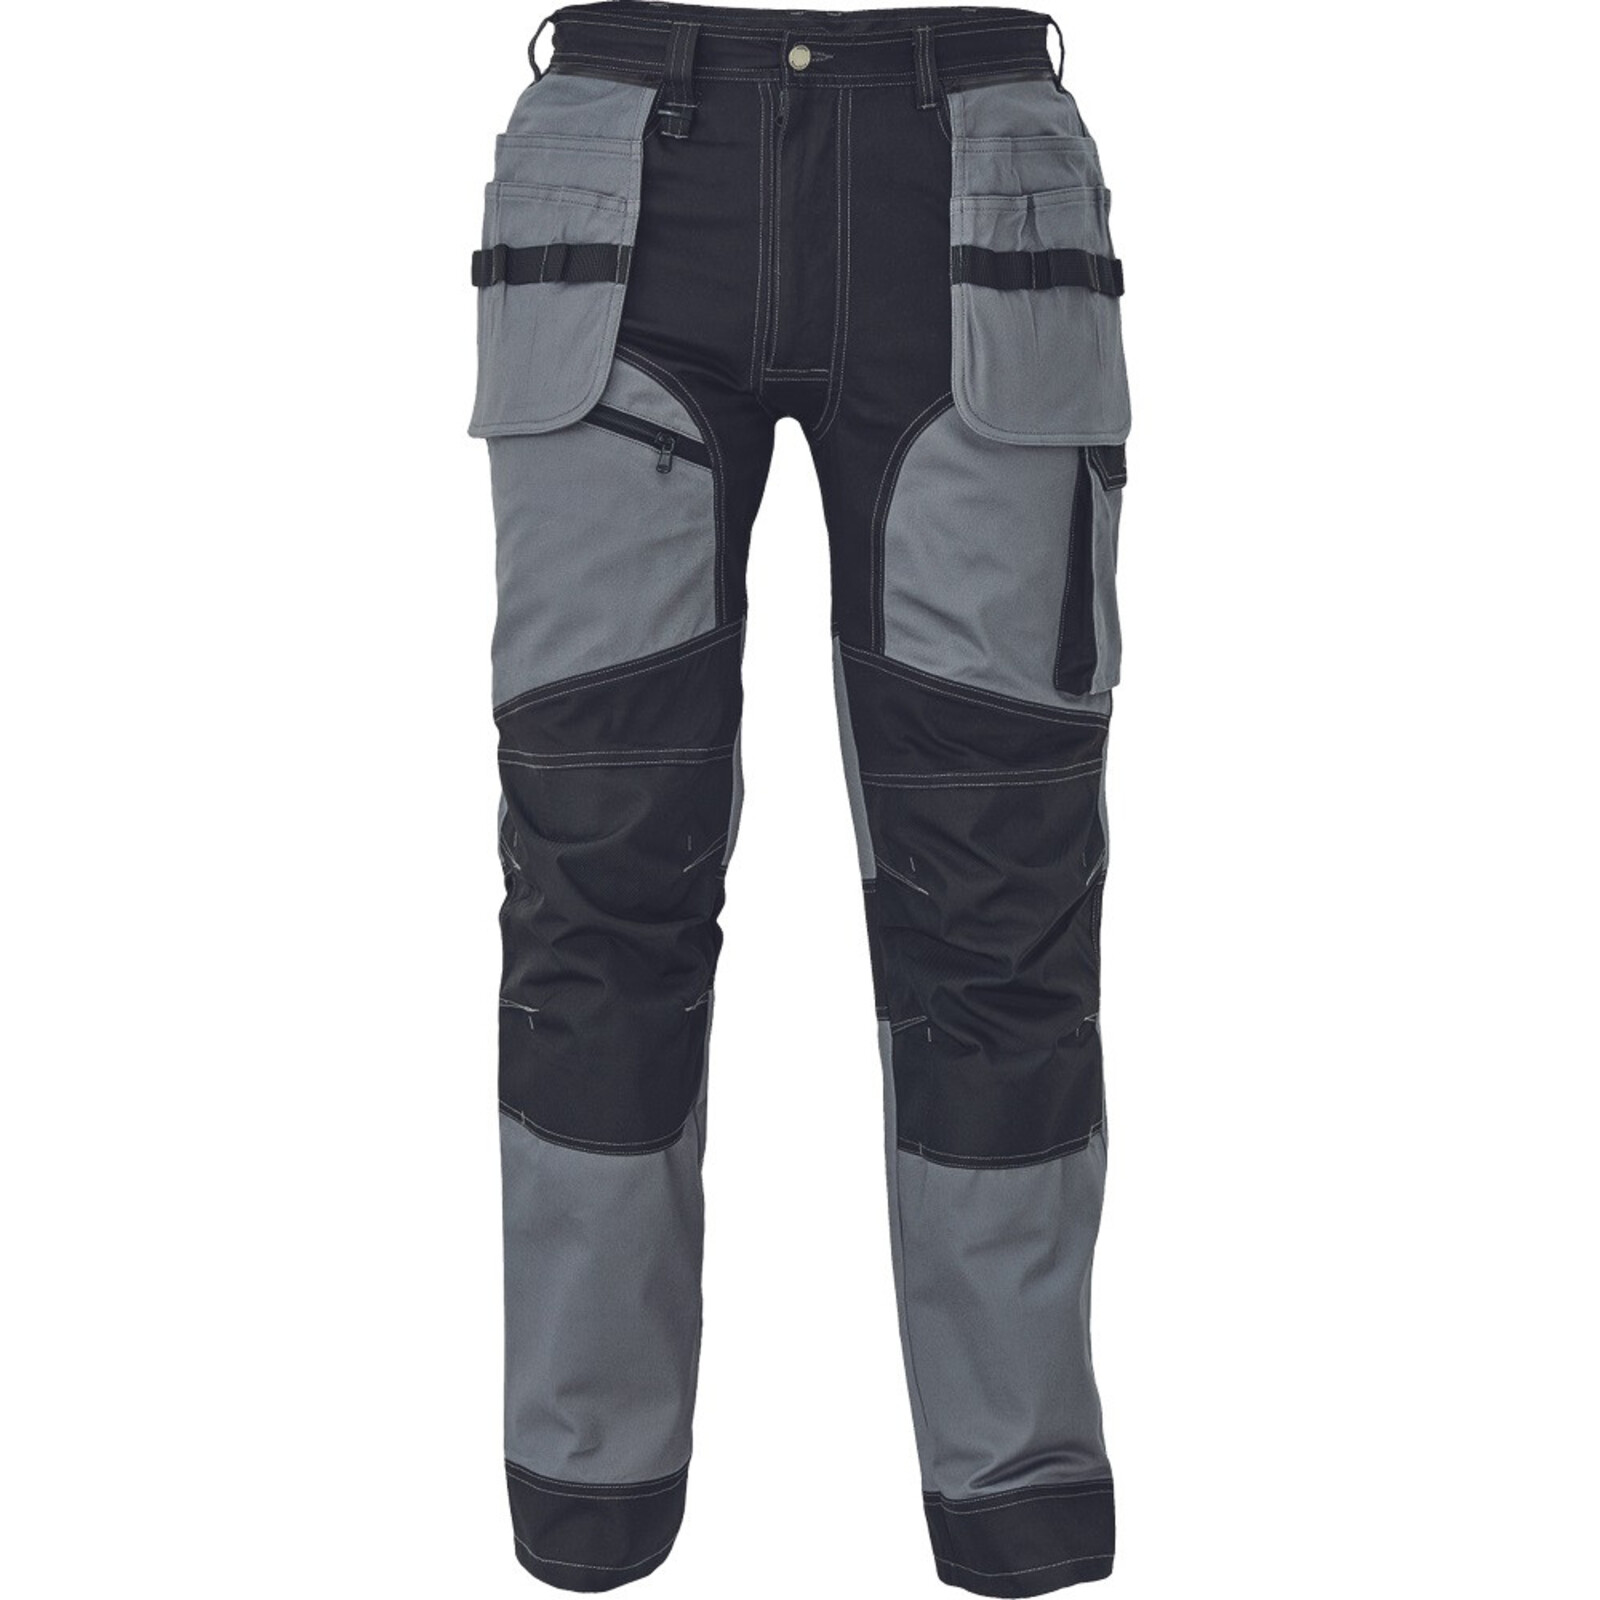 Strečové pracovné nohavice Cerva Keilor - veľkosť: 58, farba: sivá/čierna